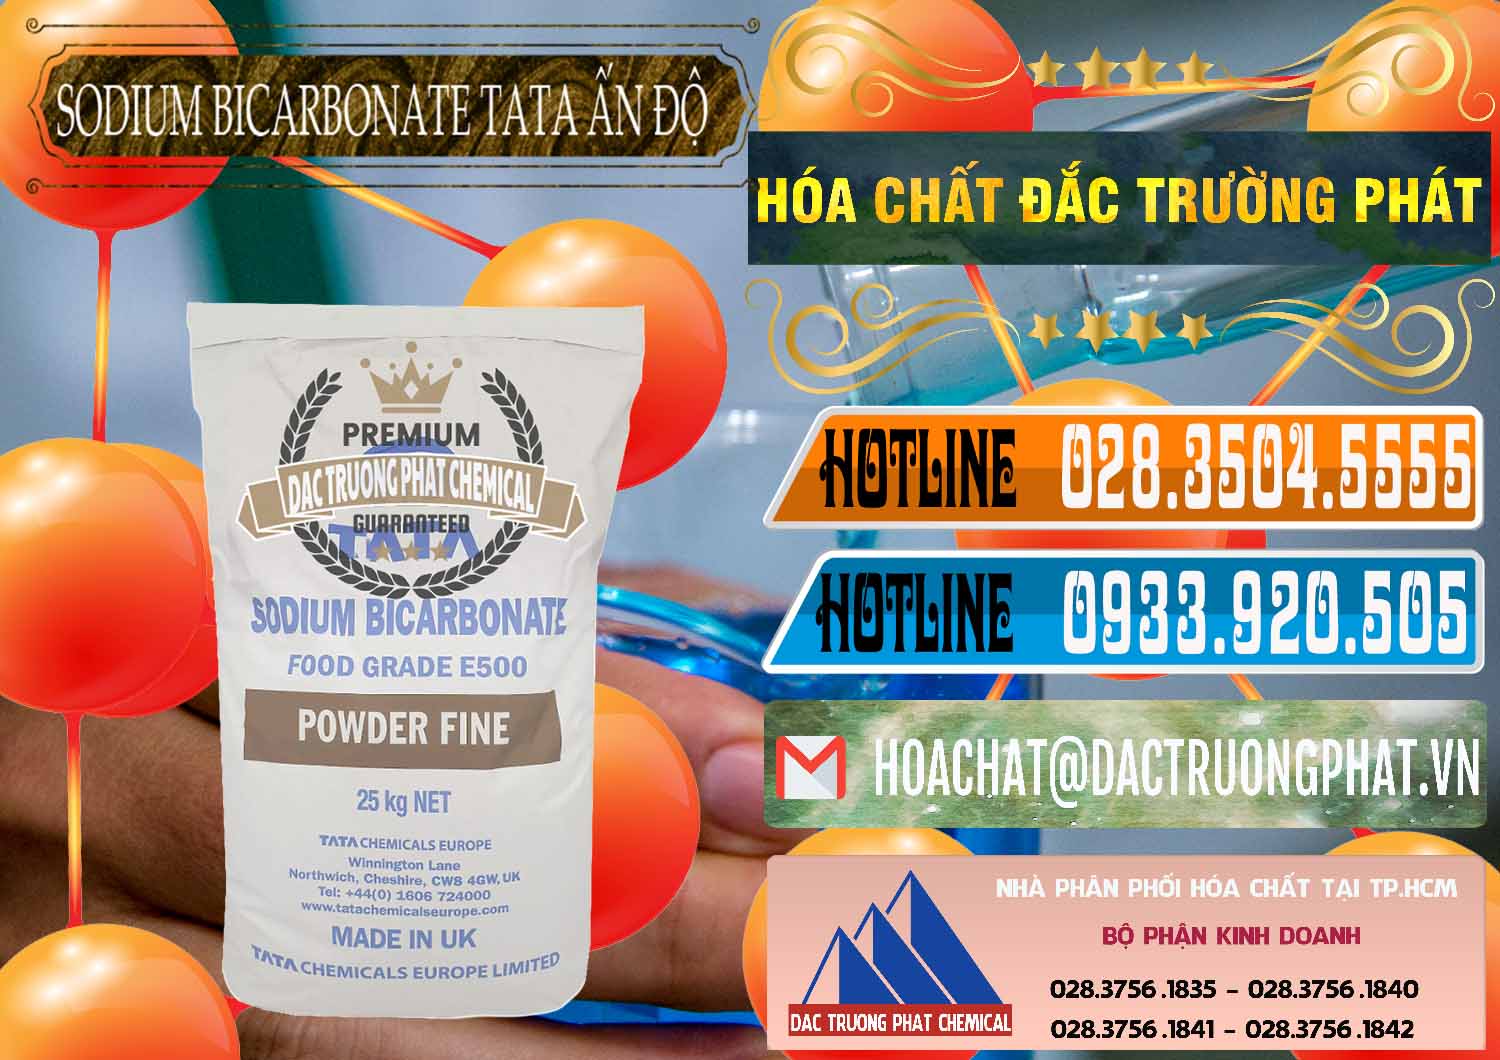 Nhà cung ứng _ bán Sodium Bicarbonate – Bicar NaHCO3 E500 Thực Phẩm Food Grade Tata Ấn Độ India - 0261 - Nơi phân phối - nhập khẩu hóa chất tại TP.HCM - stmp.net